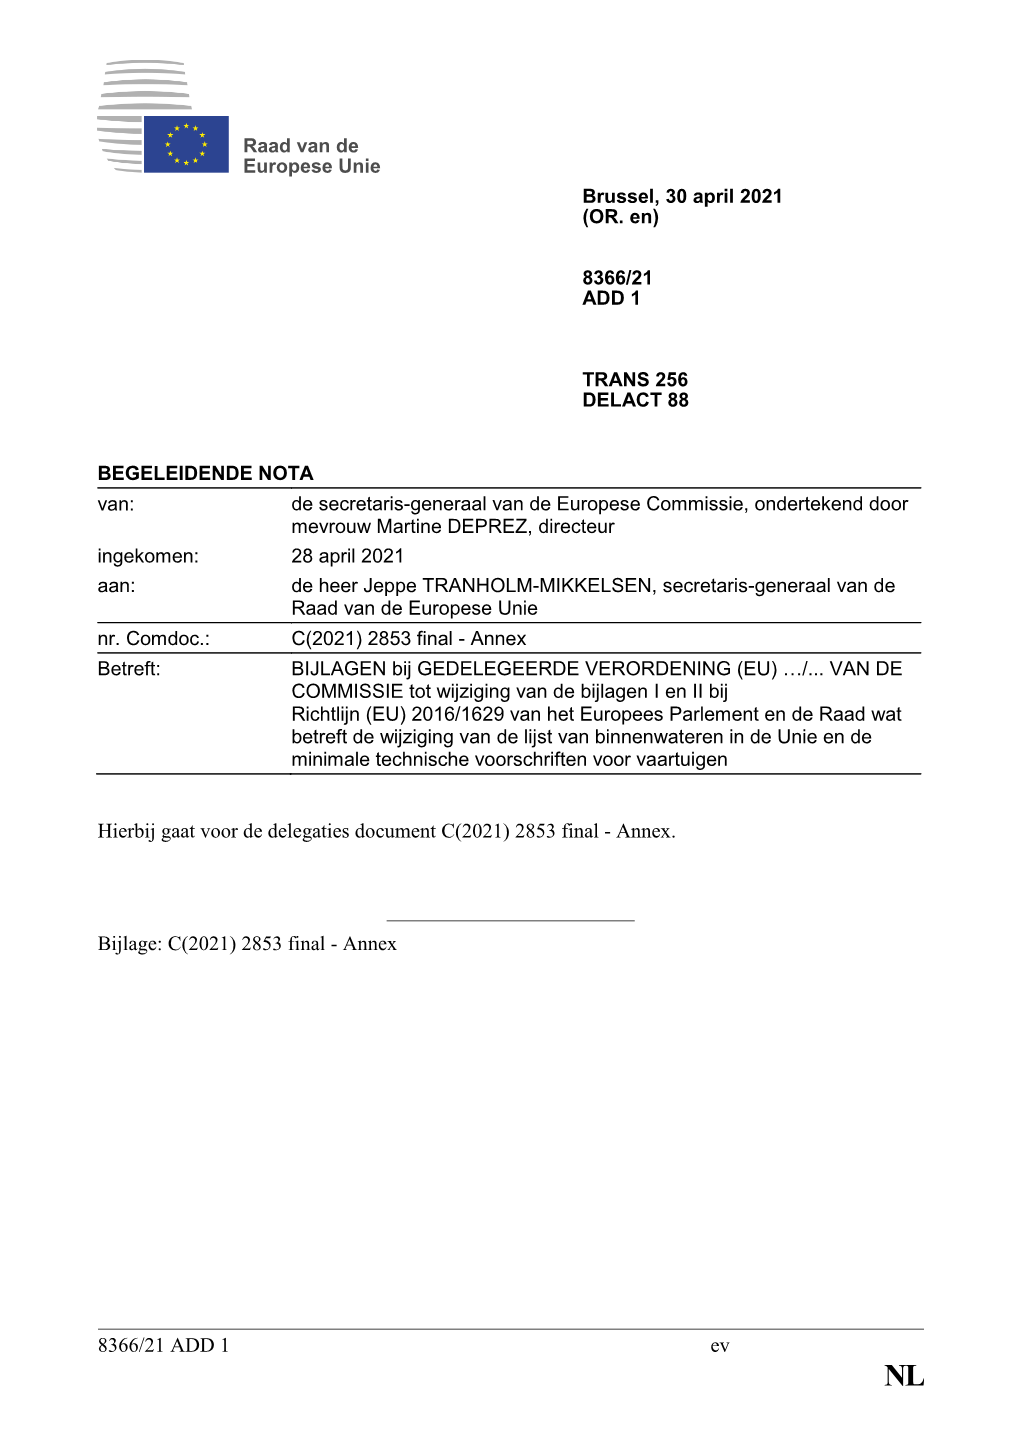 8366/21 ADD 1 Ev Hierbij Gaat Voor De Delegaties Document C(2021